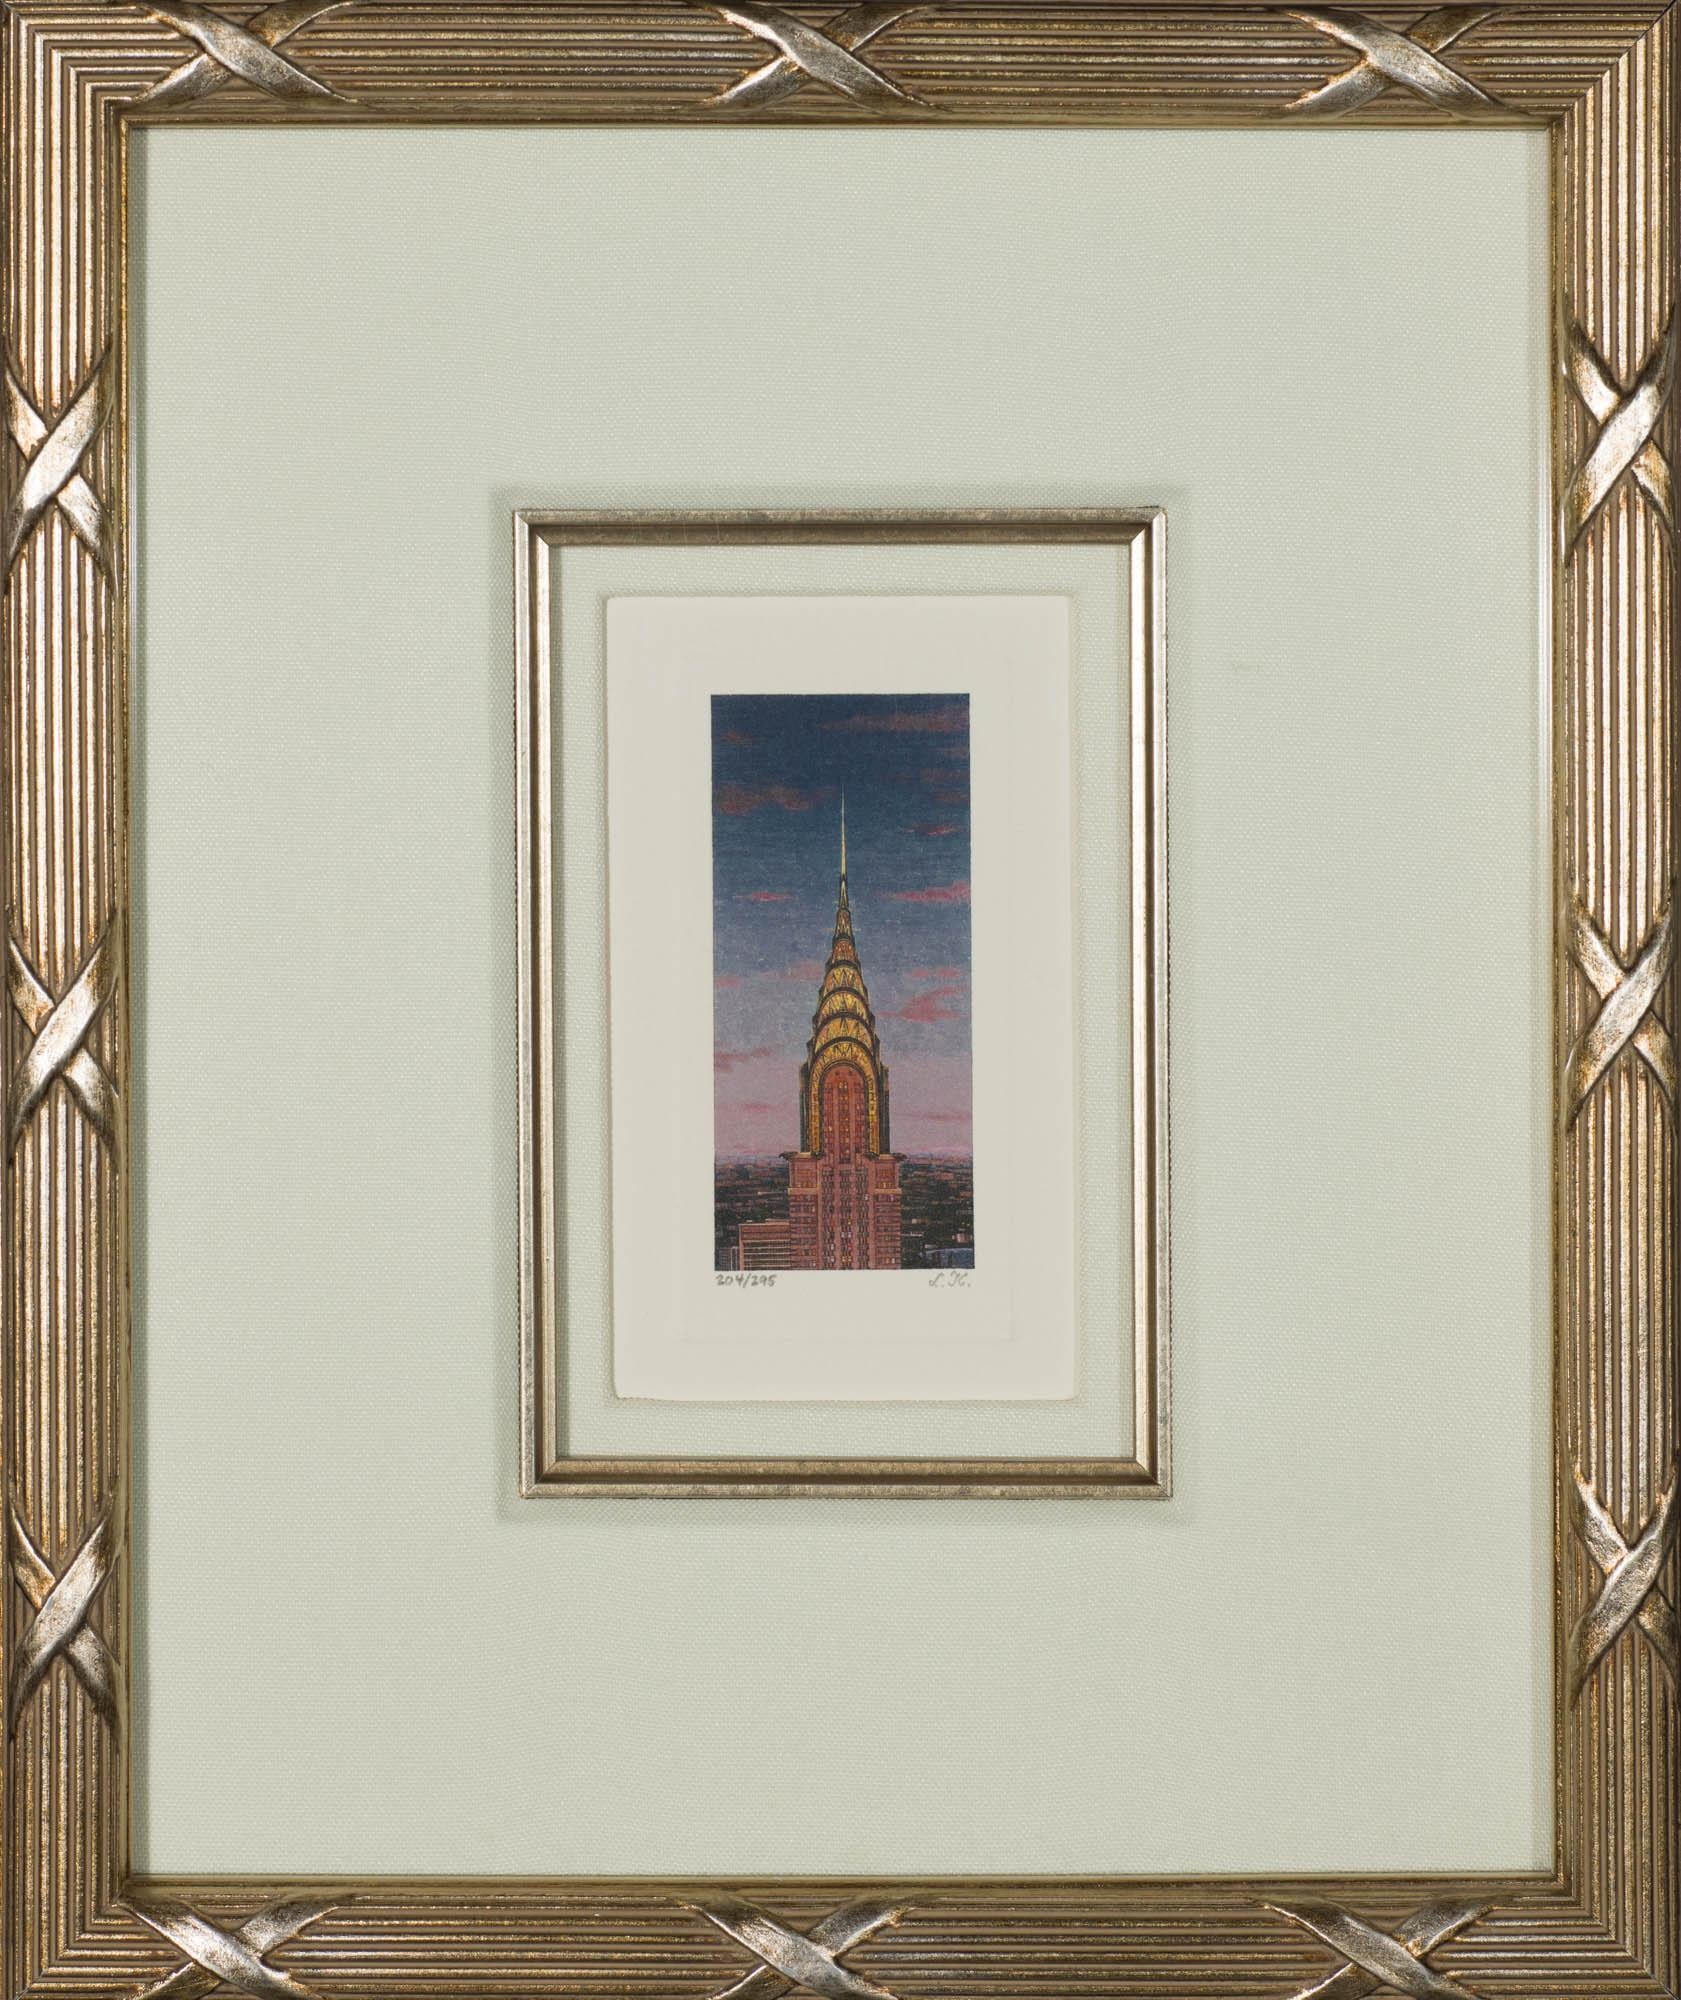 Chrysler Building - Contemporary Print by Liudmila Kondakova